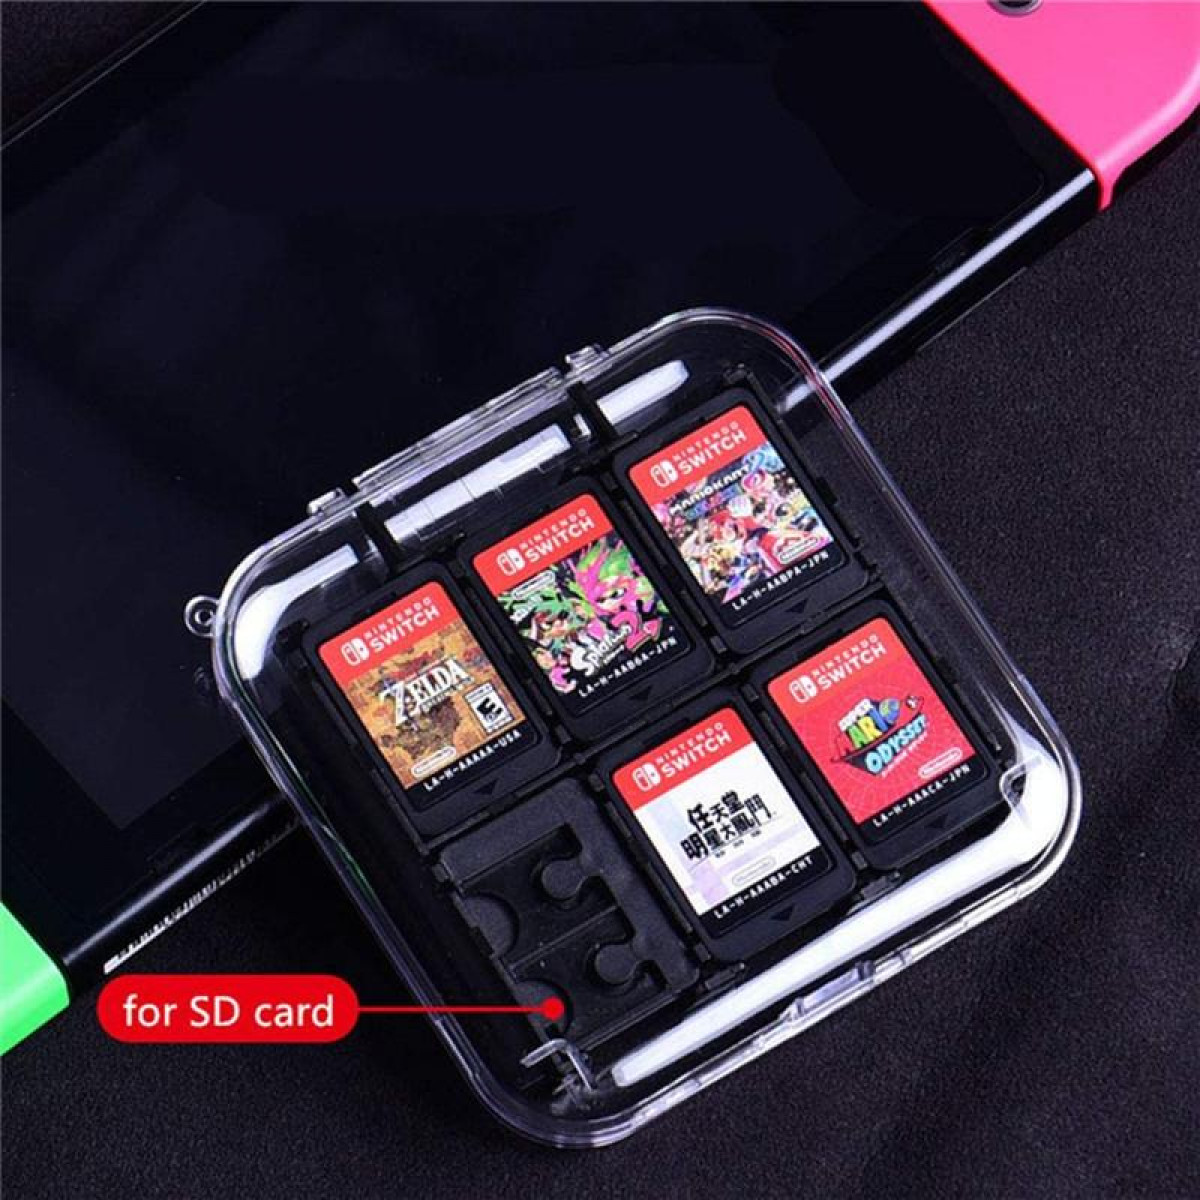 Switch 50143465 Transparent, Spiele, 12 Nintendo INF Kartenhalter für Fächer